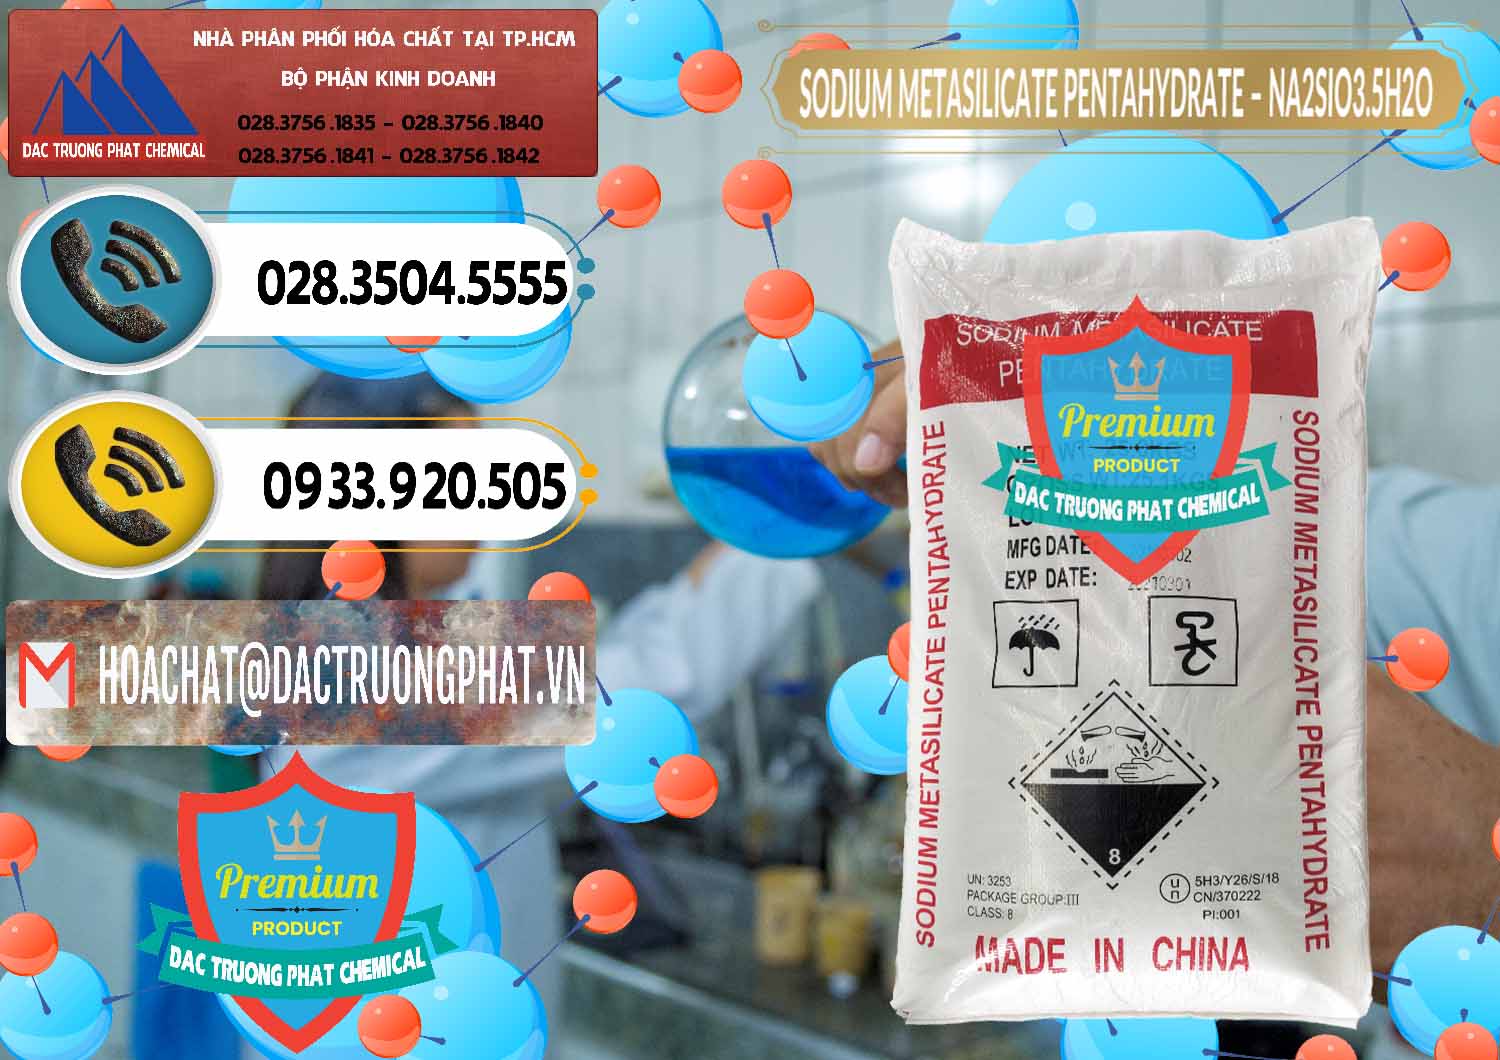 Nơi bán _ cung cấp Sodium Metasilicate Pentahydrate – Silicate Bột Trung Quốc China - 0147 - Đơn vị chuyên phân phối ( nhập khẩu ) hóa chất tại TP.HCM - hoachatdetnhuom.vn